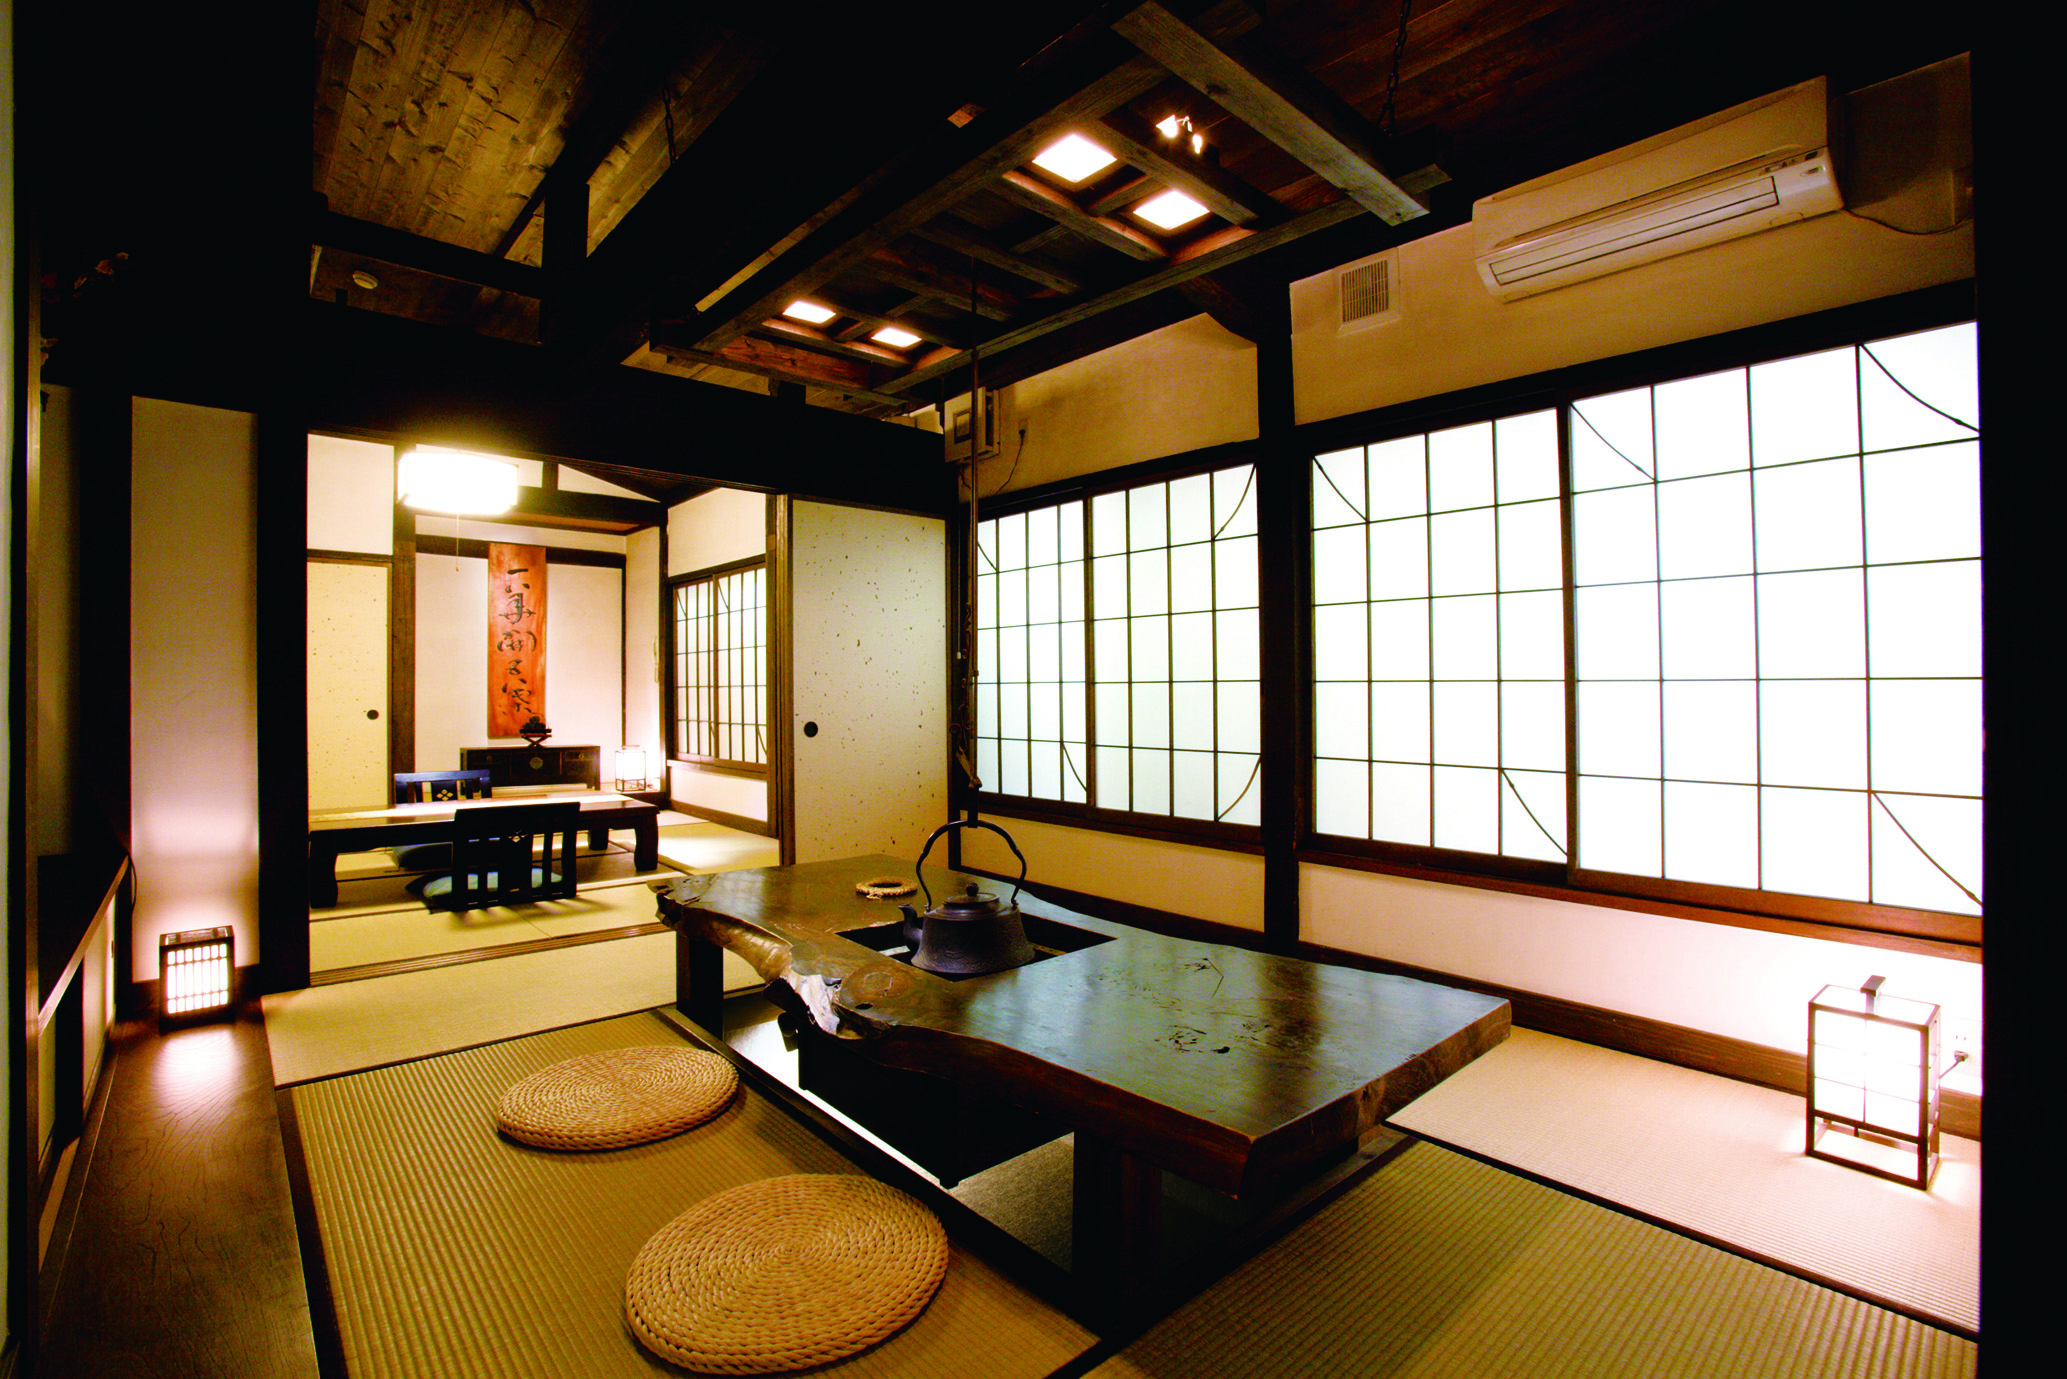 『和の匠 花暖簾』日本の伝統美を感じる囲炉裏のテーブルでゆったりと食事をいただける和室「山吹」。